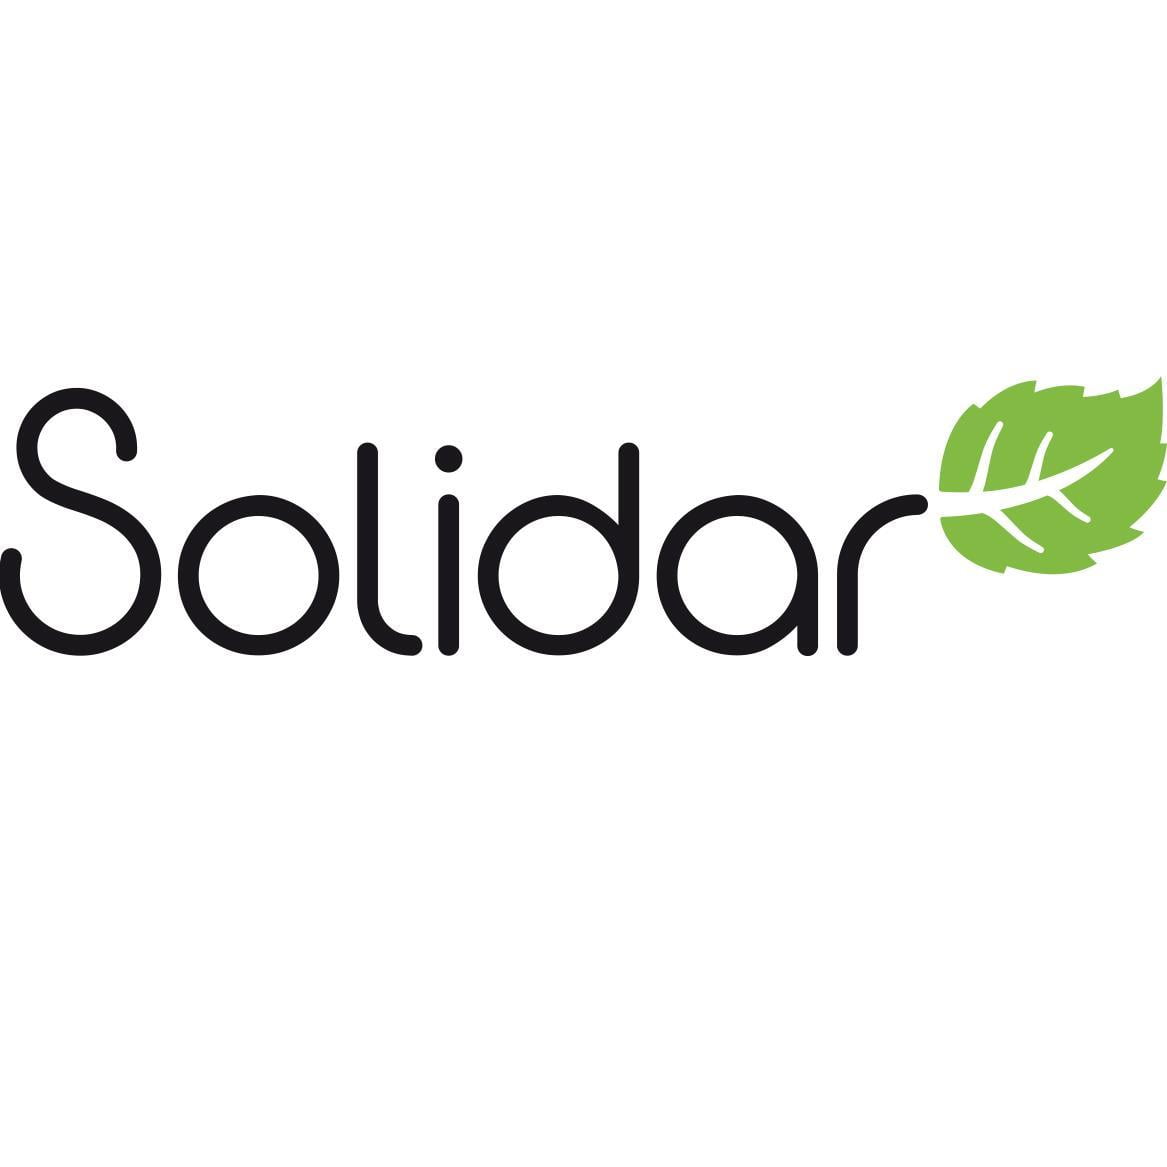 Solidar förvärvar dinapensioner.se och förstärker kunderbjudandet